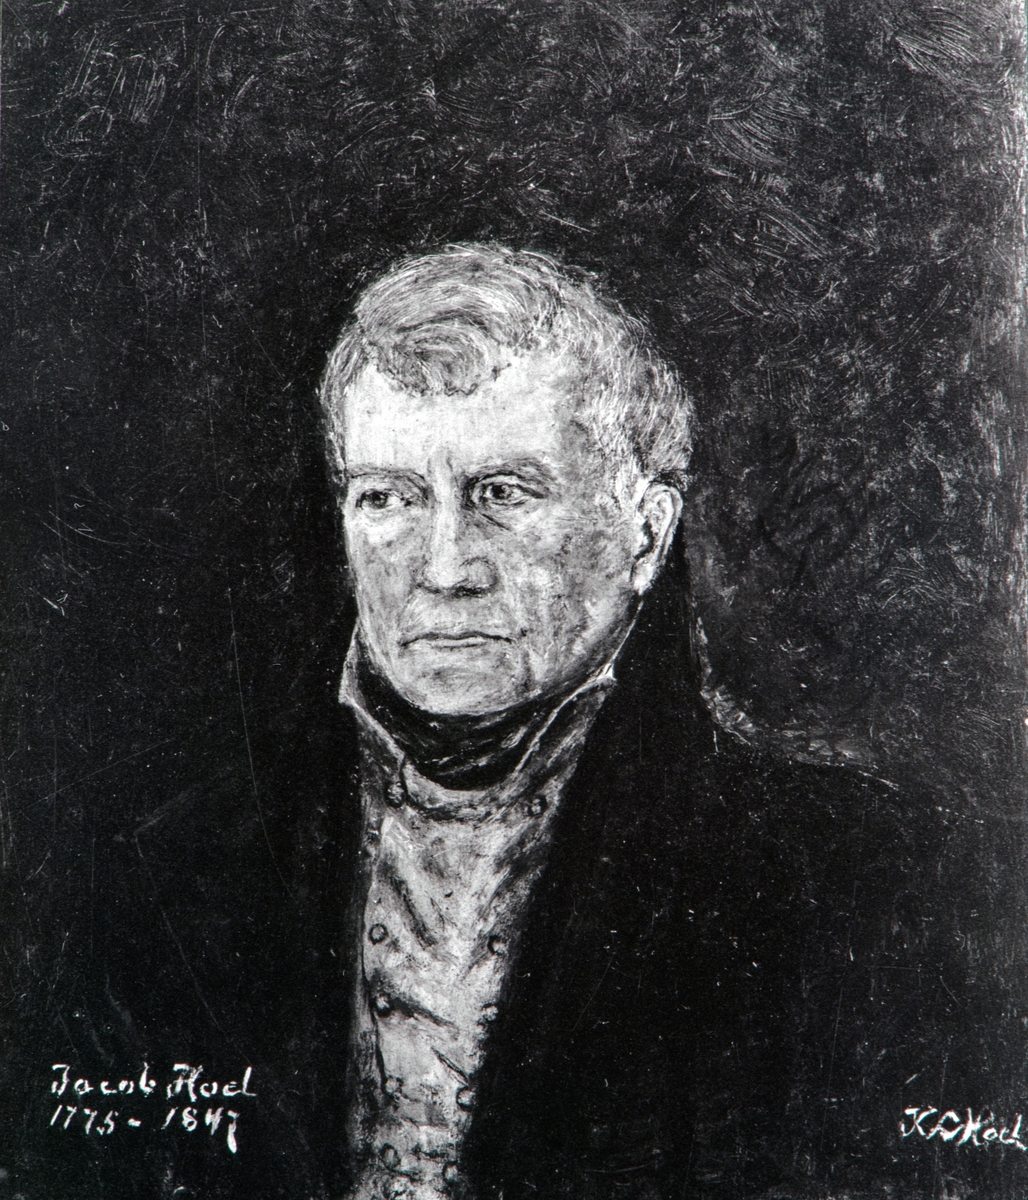 Fotografi av et portrettmaleri av løytnant Jacob Hoel, utført av hans oldebarn Karen Louise Ramm Hoel.